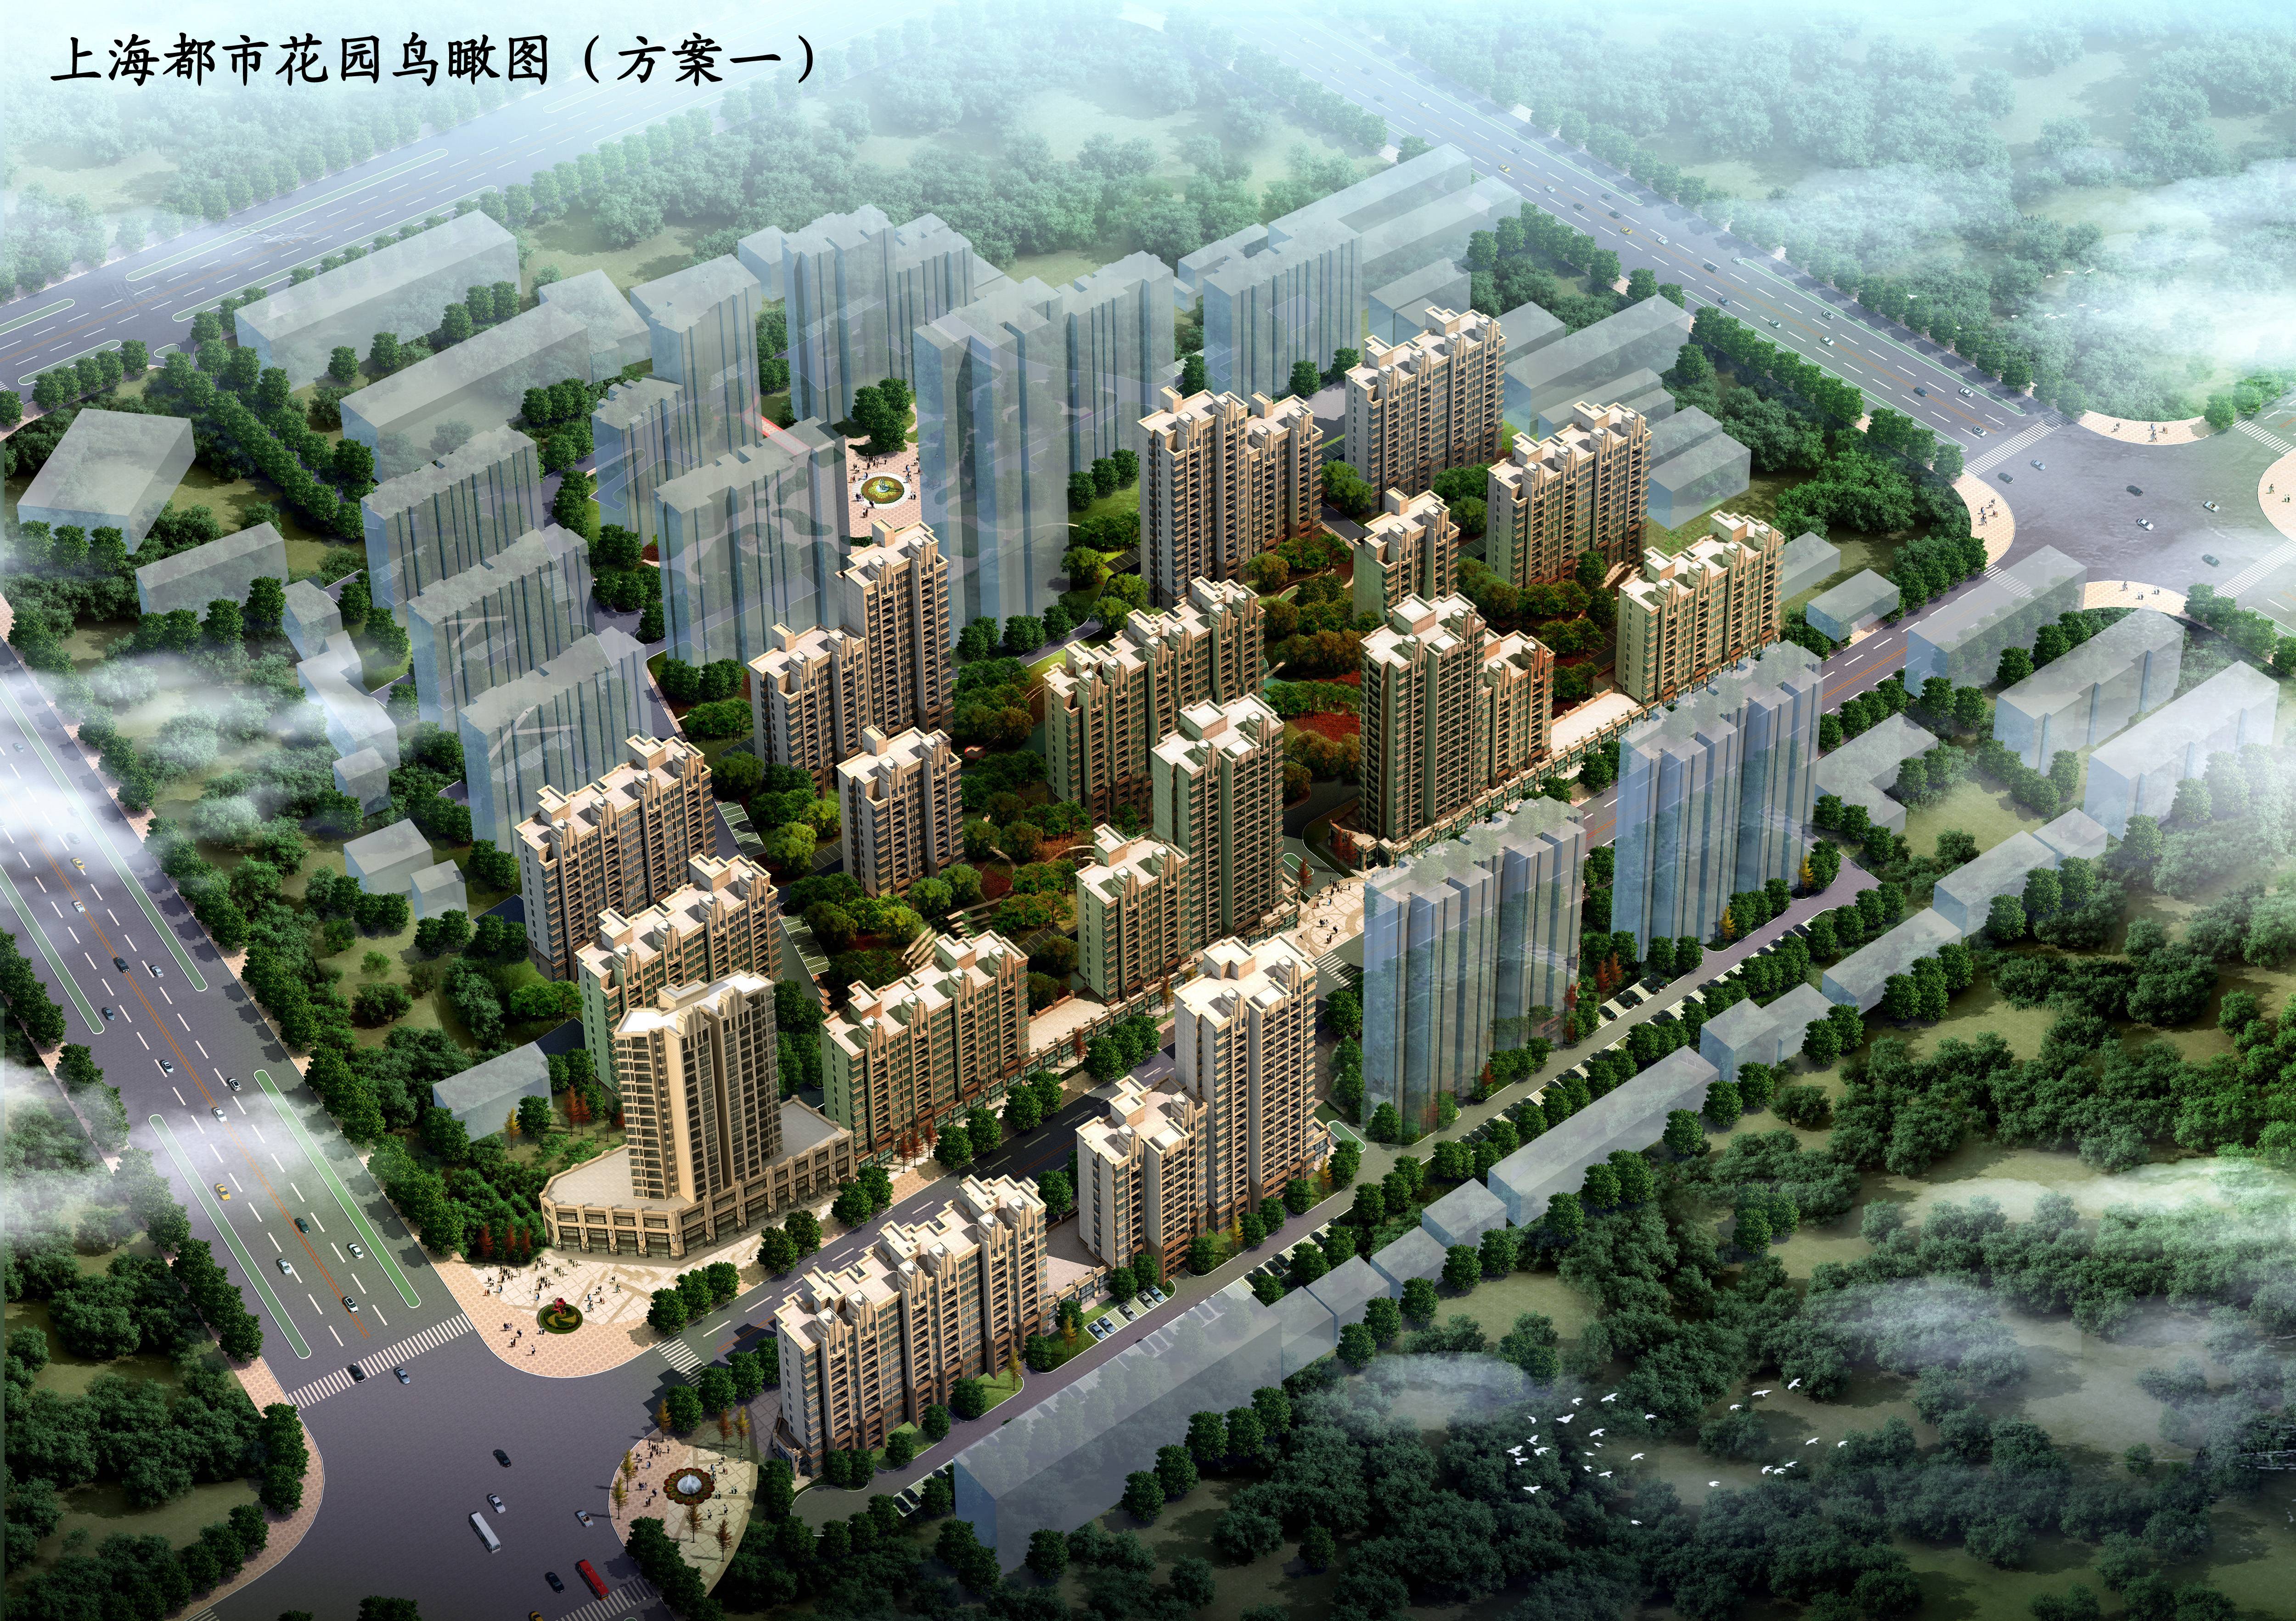 与鑫科置业联合开发的上海都市花园项目企业形象